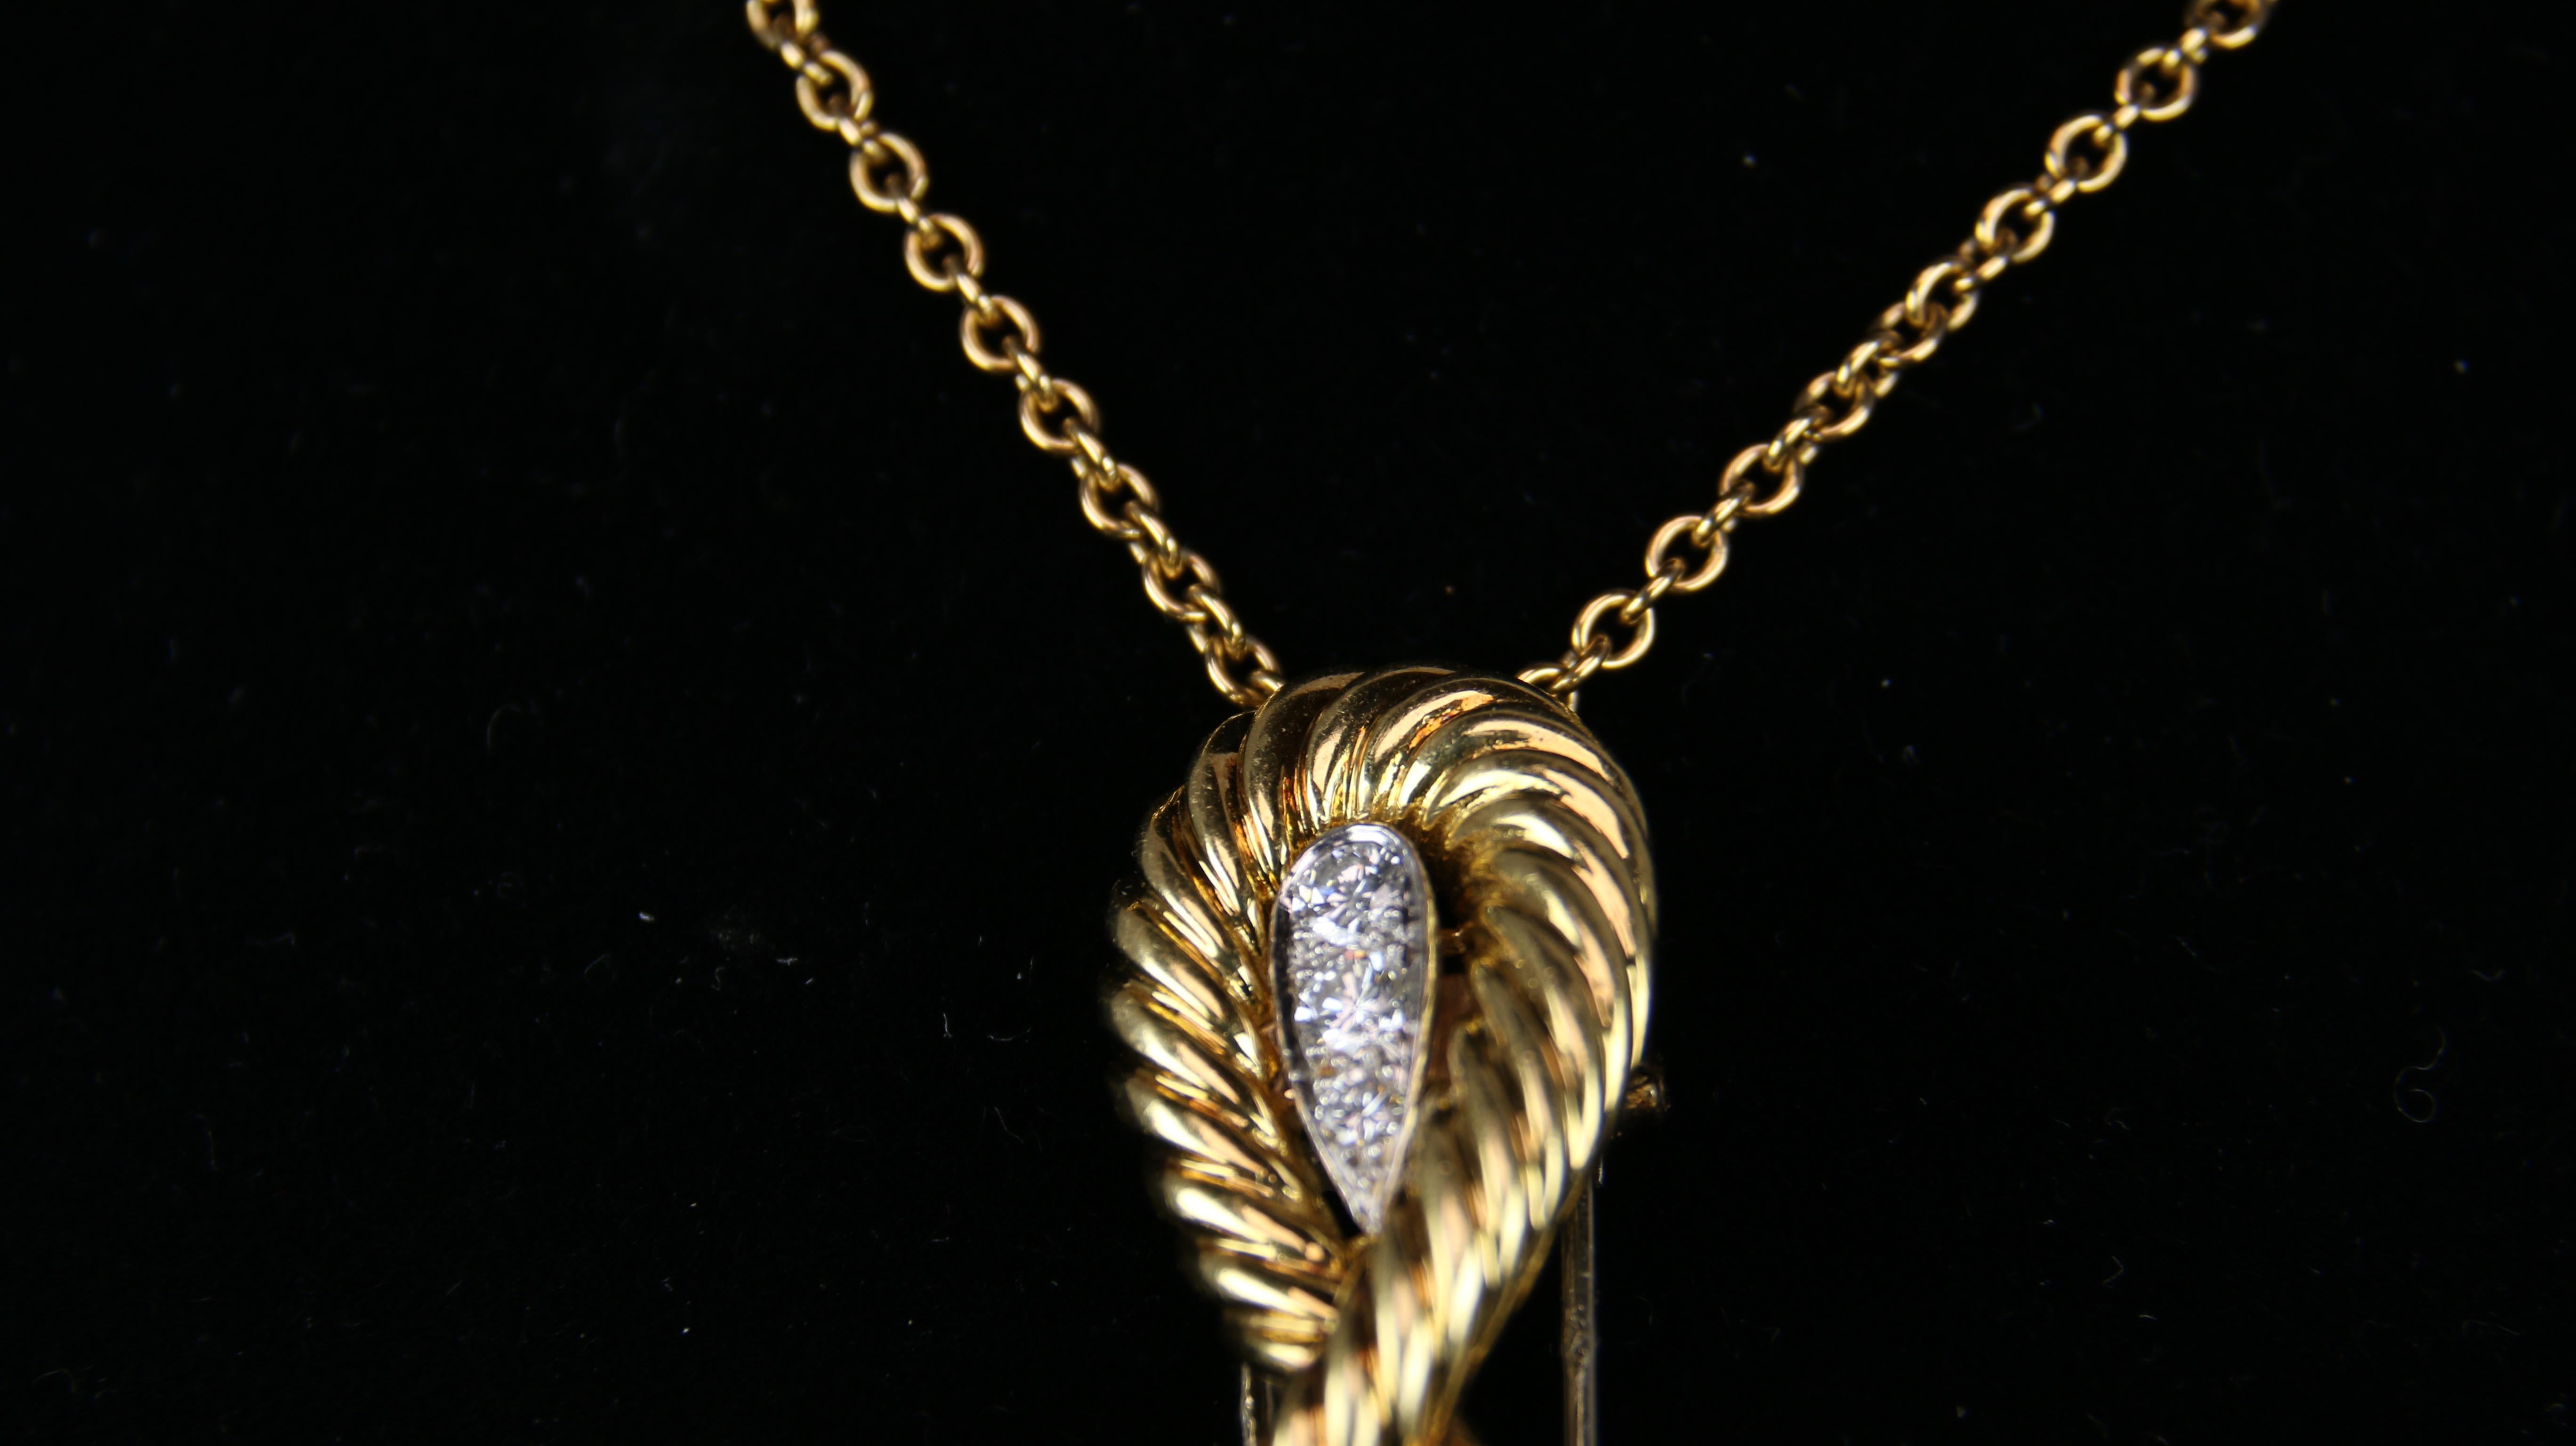 Ropy Gold Kreuz Design gefüllt mit Diamanten.  Dieses elegante VCA-Stück ist genau die richtige Ergänzung für jede Schmuckgarderobe 